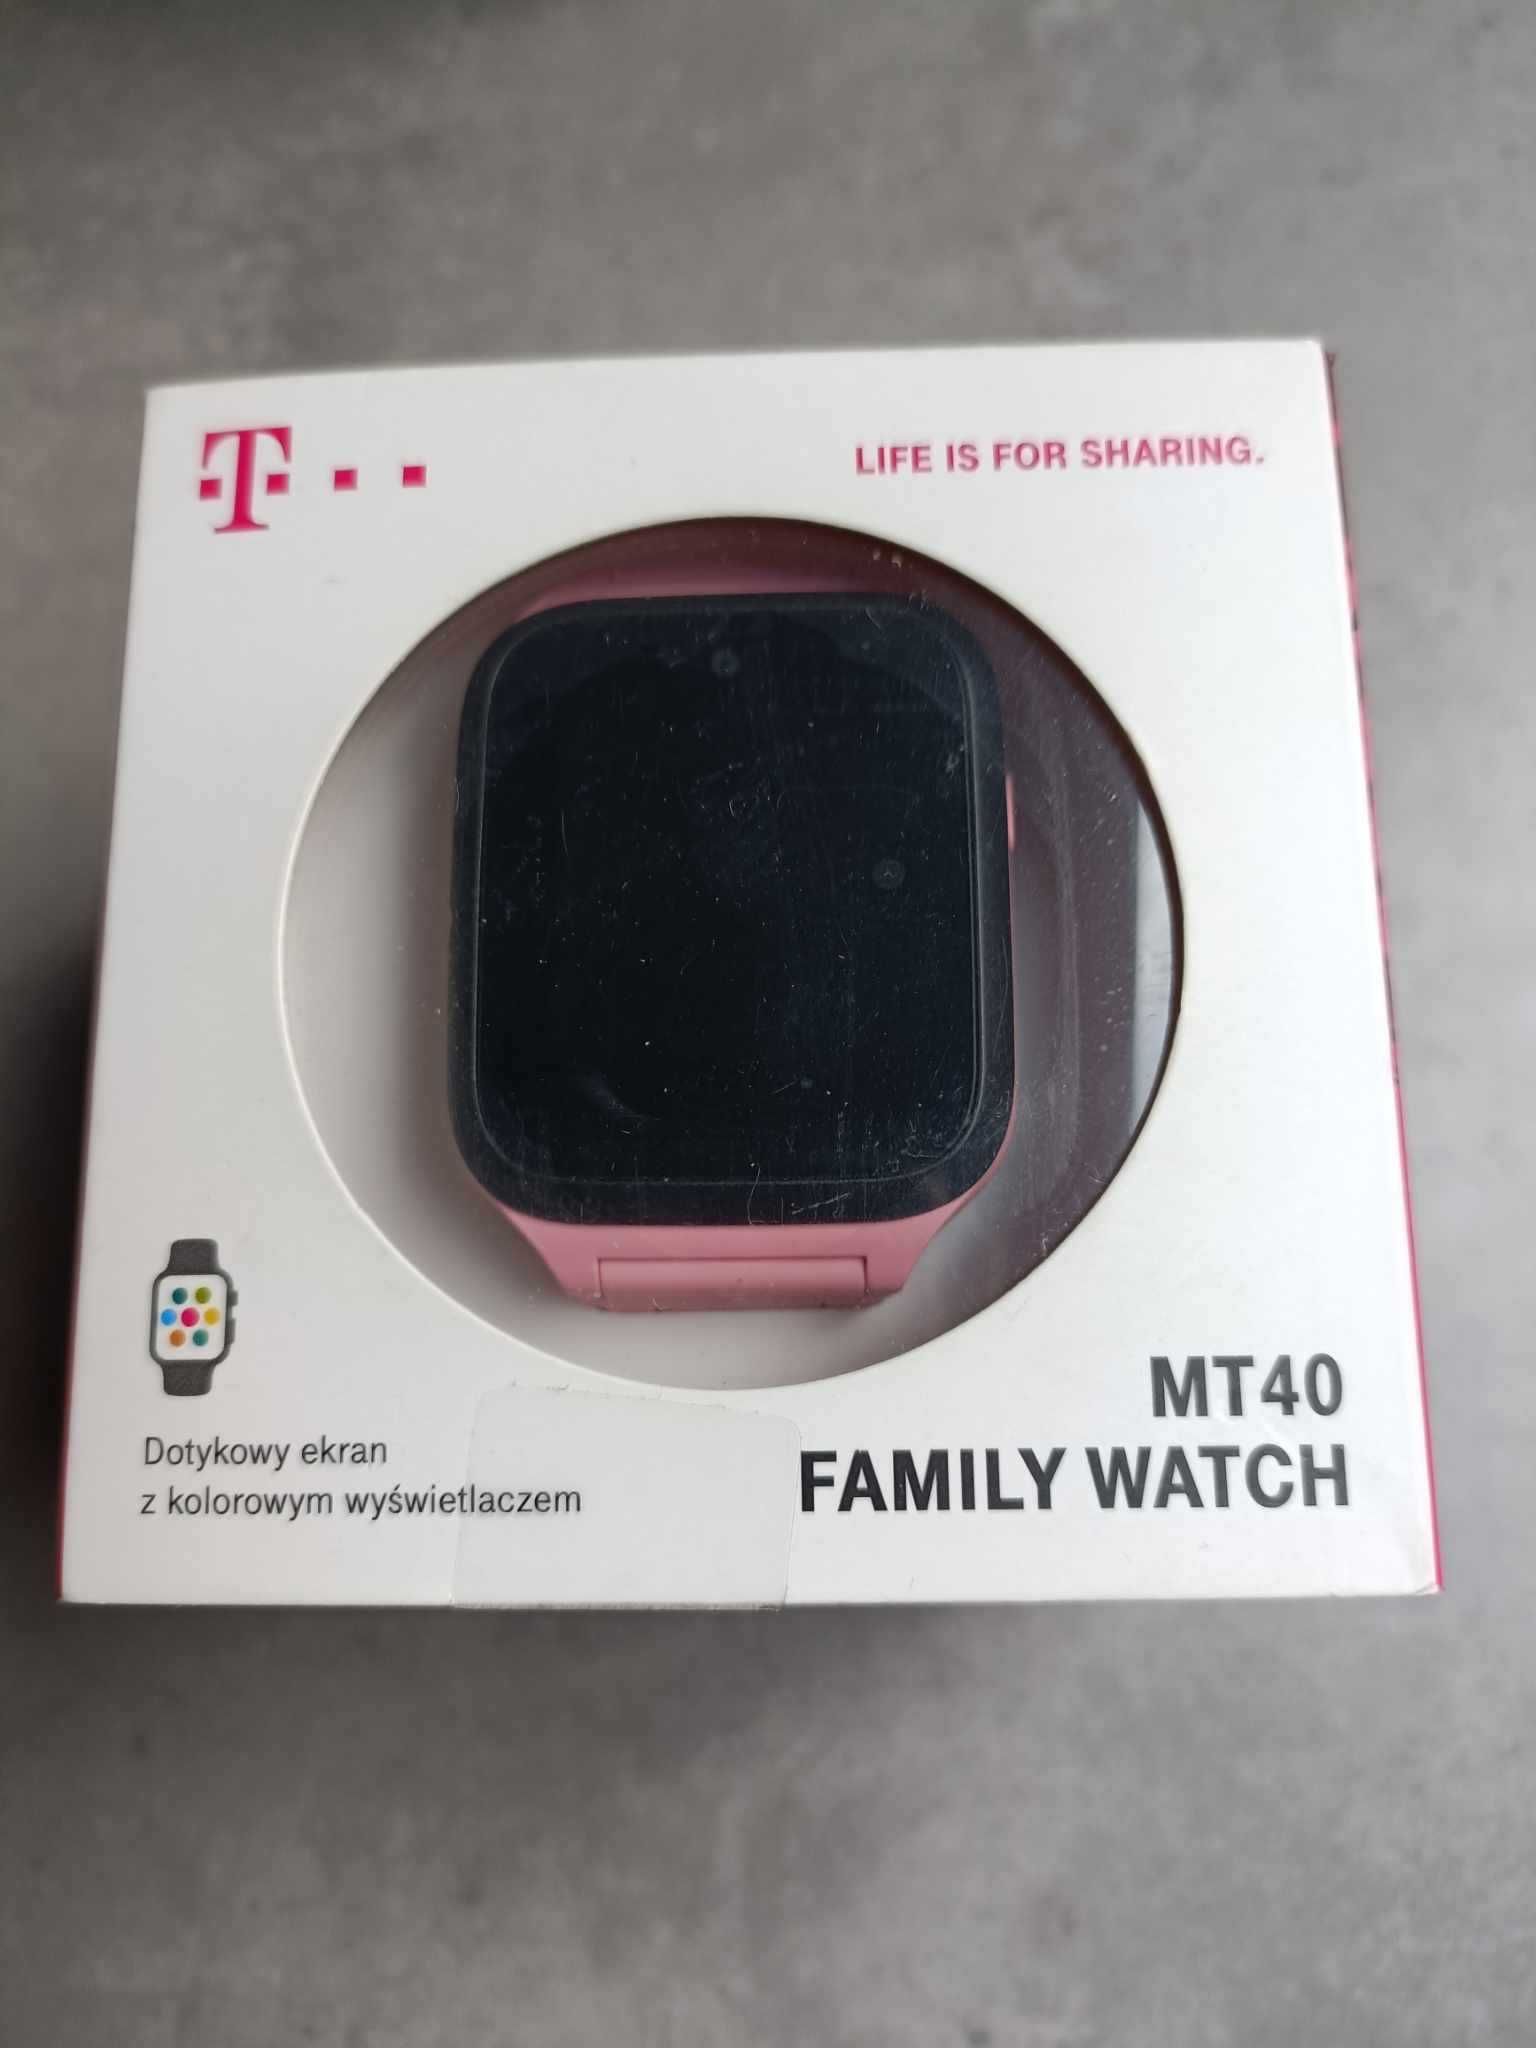 Sprzedam smartwatcha MT40 FAMILY WATCH